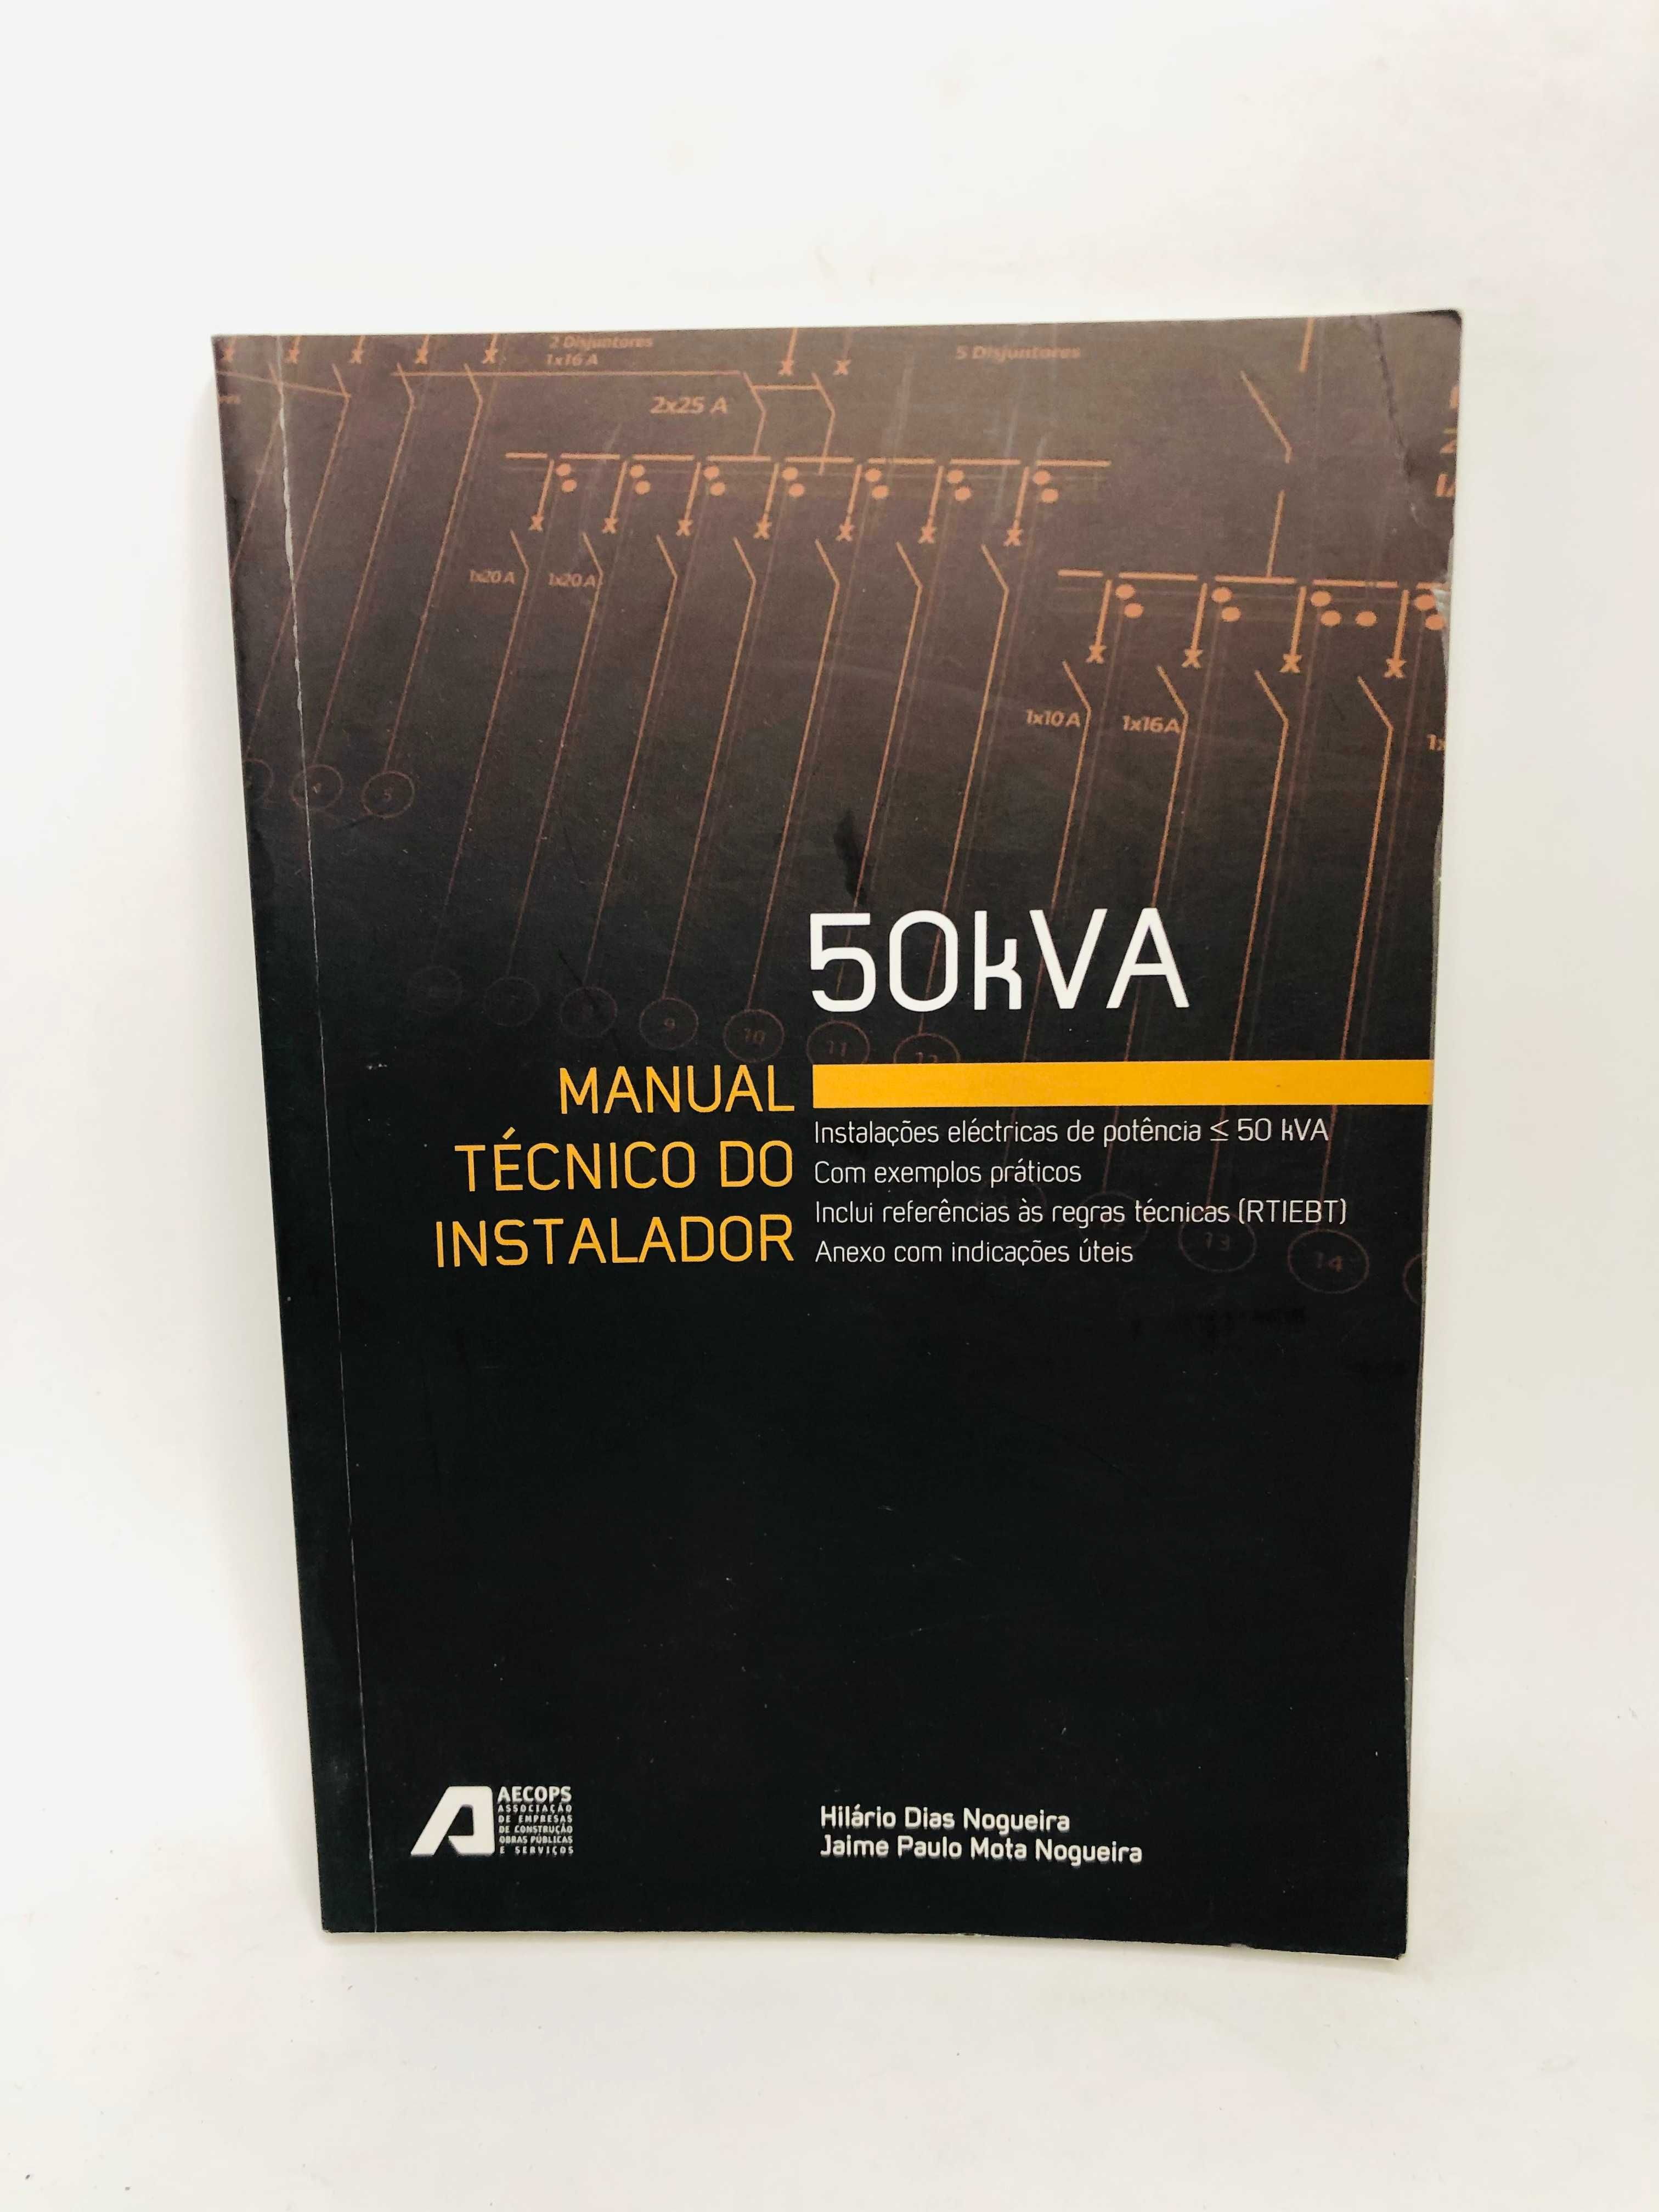 50kVA Manual Técnico do Instalador